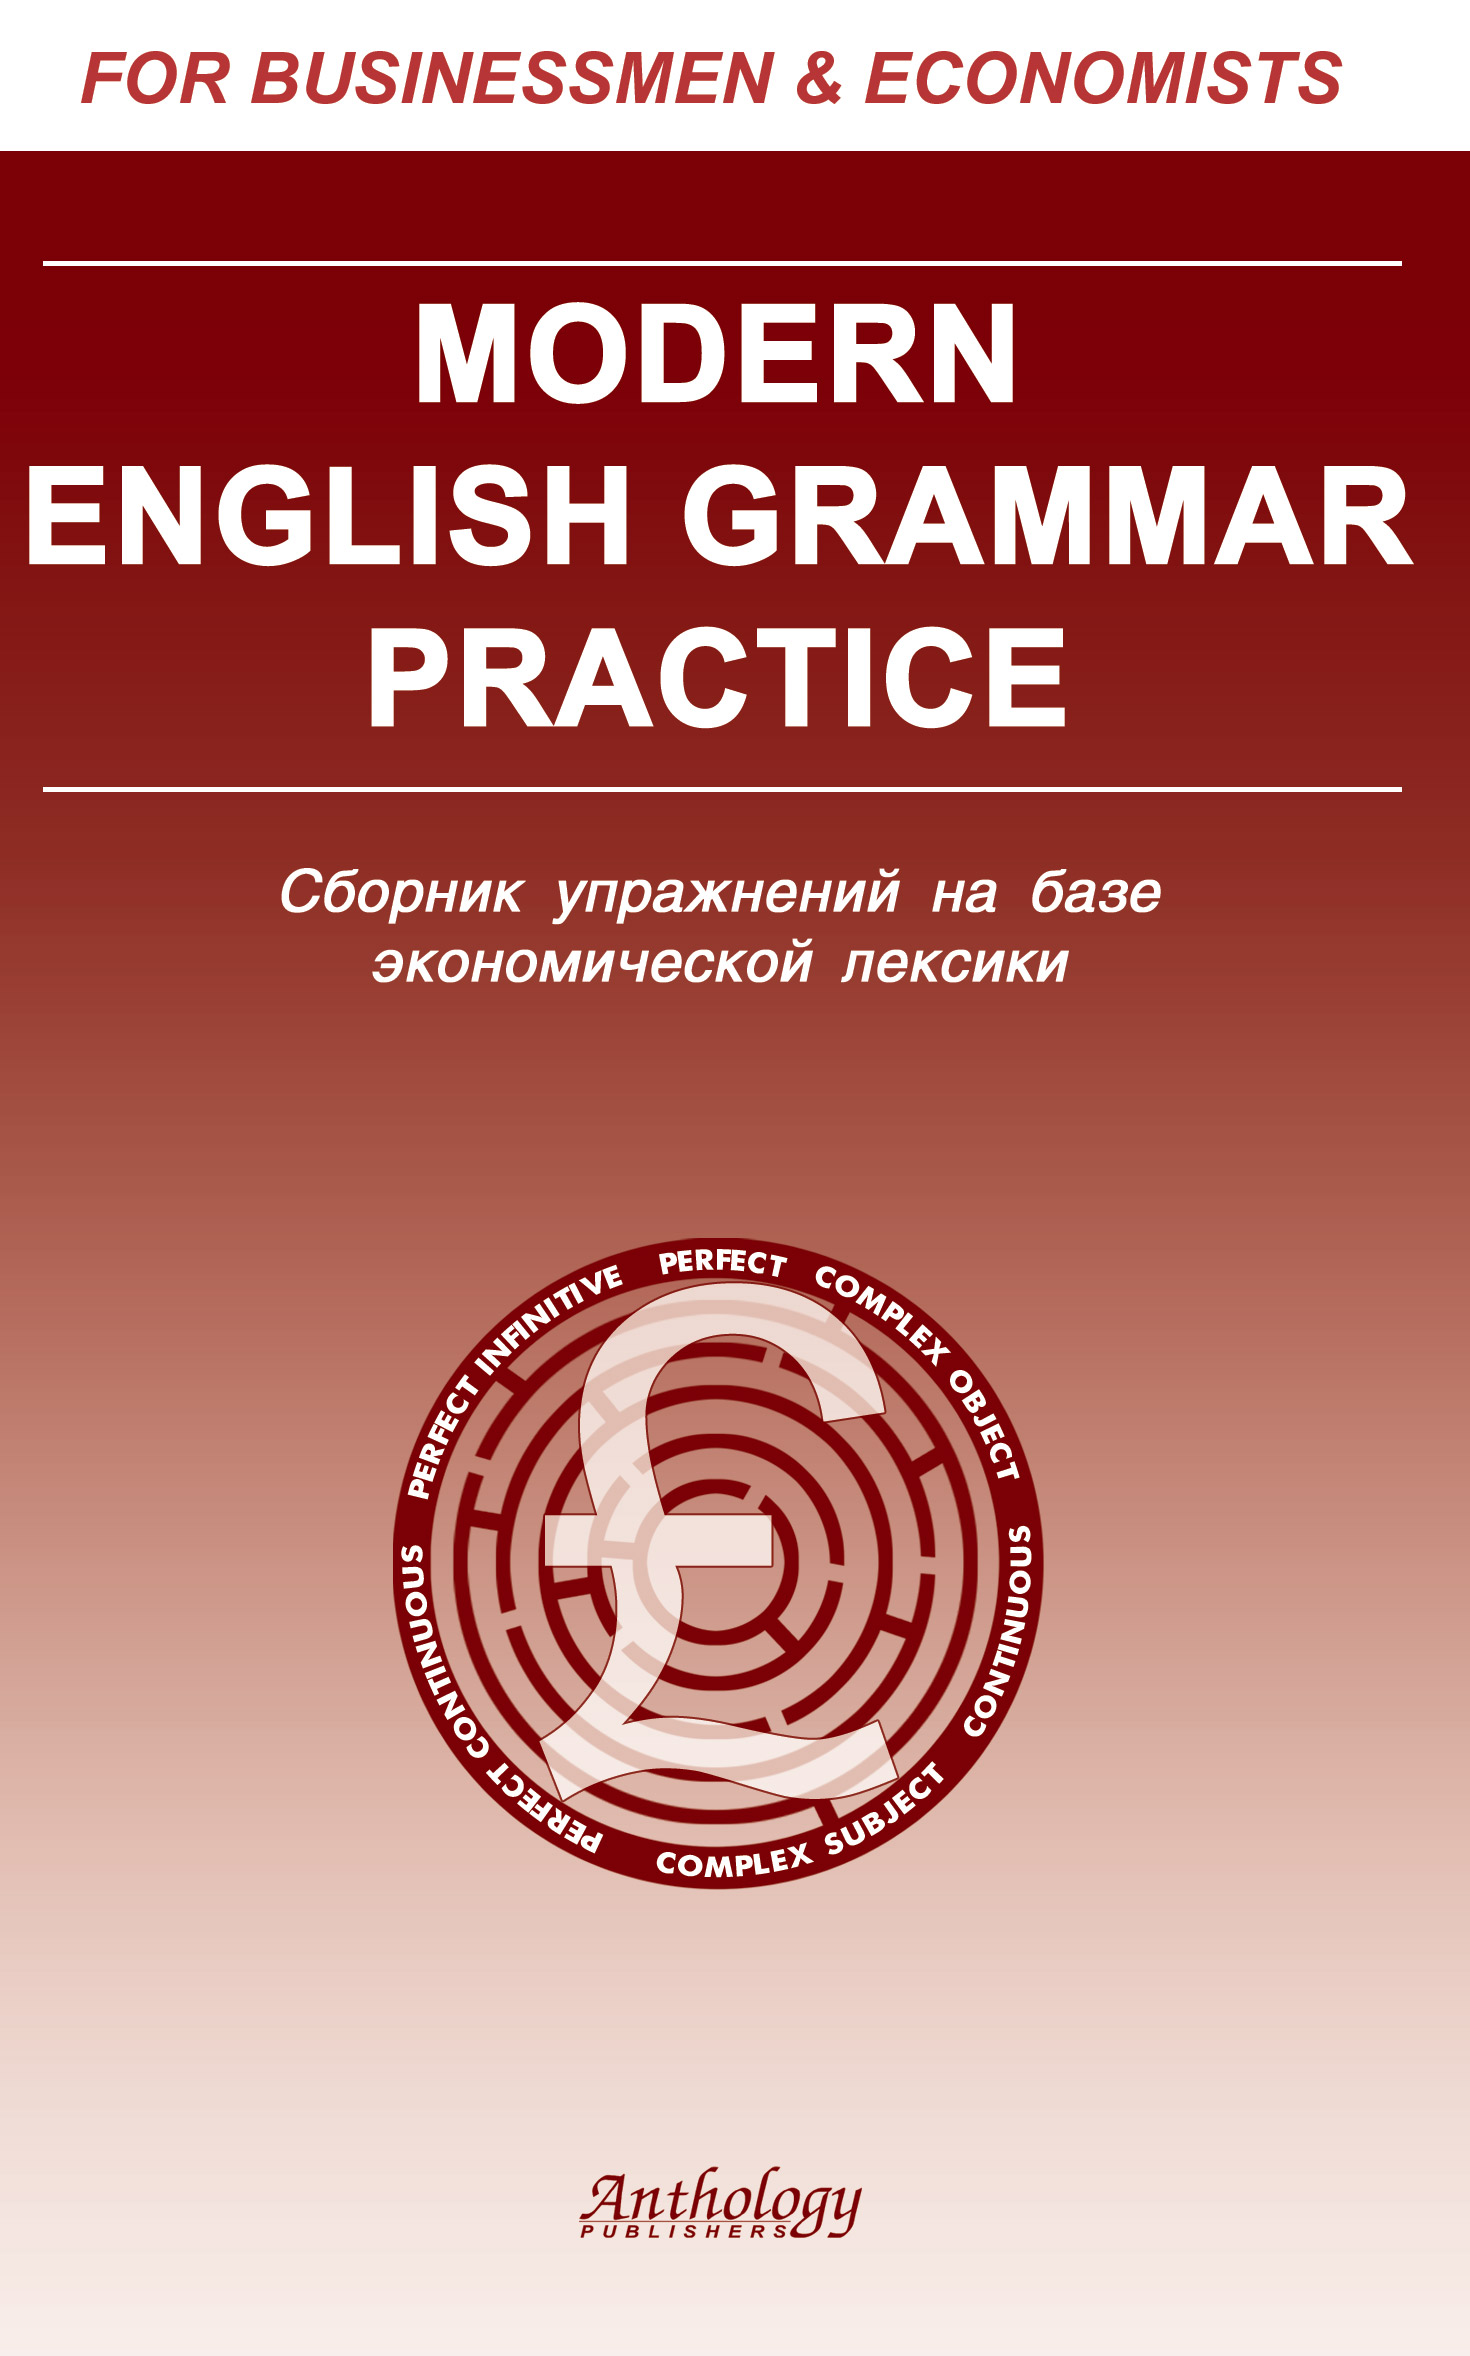 Современная грамматика английского языка (Mordern English Grammar Practice)